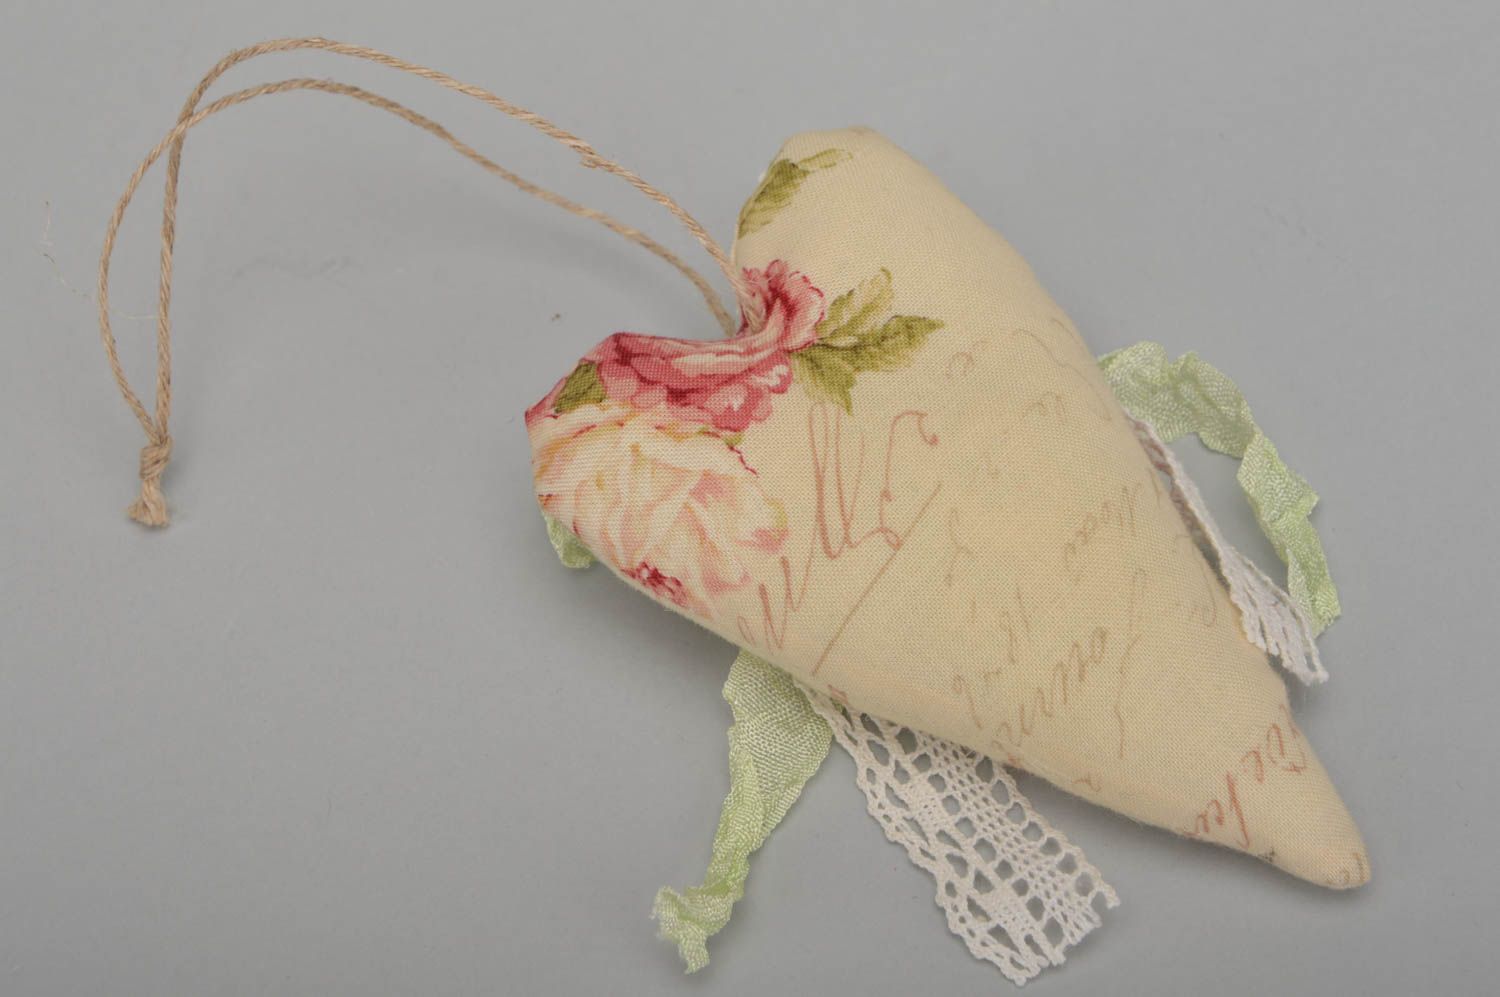 Интерьерная подвеска сердце с цветами с запахом ванили тектсильное ручной работы фото 5